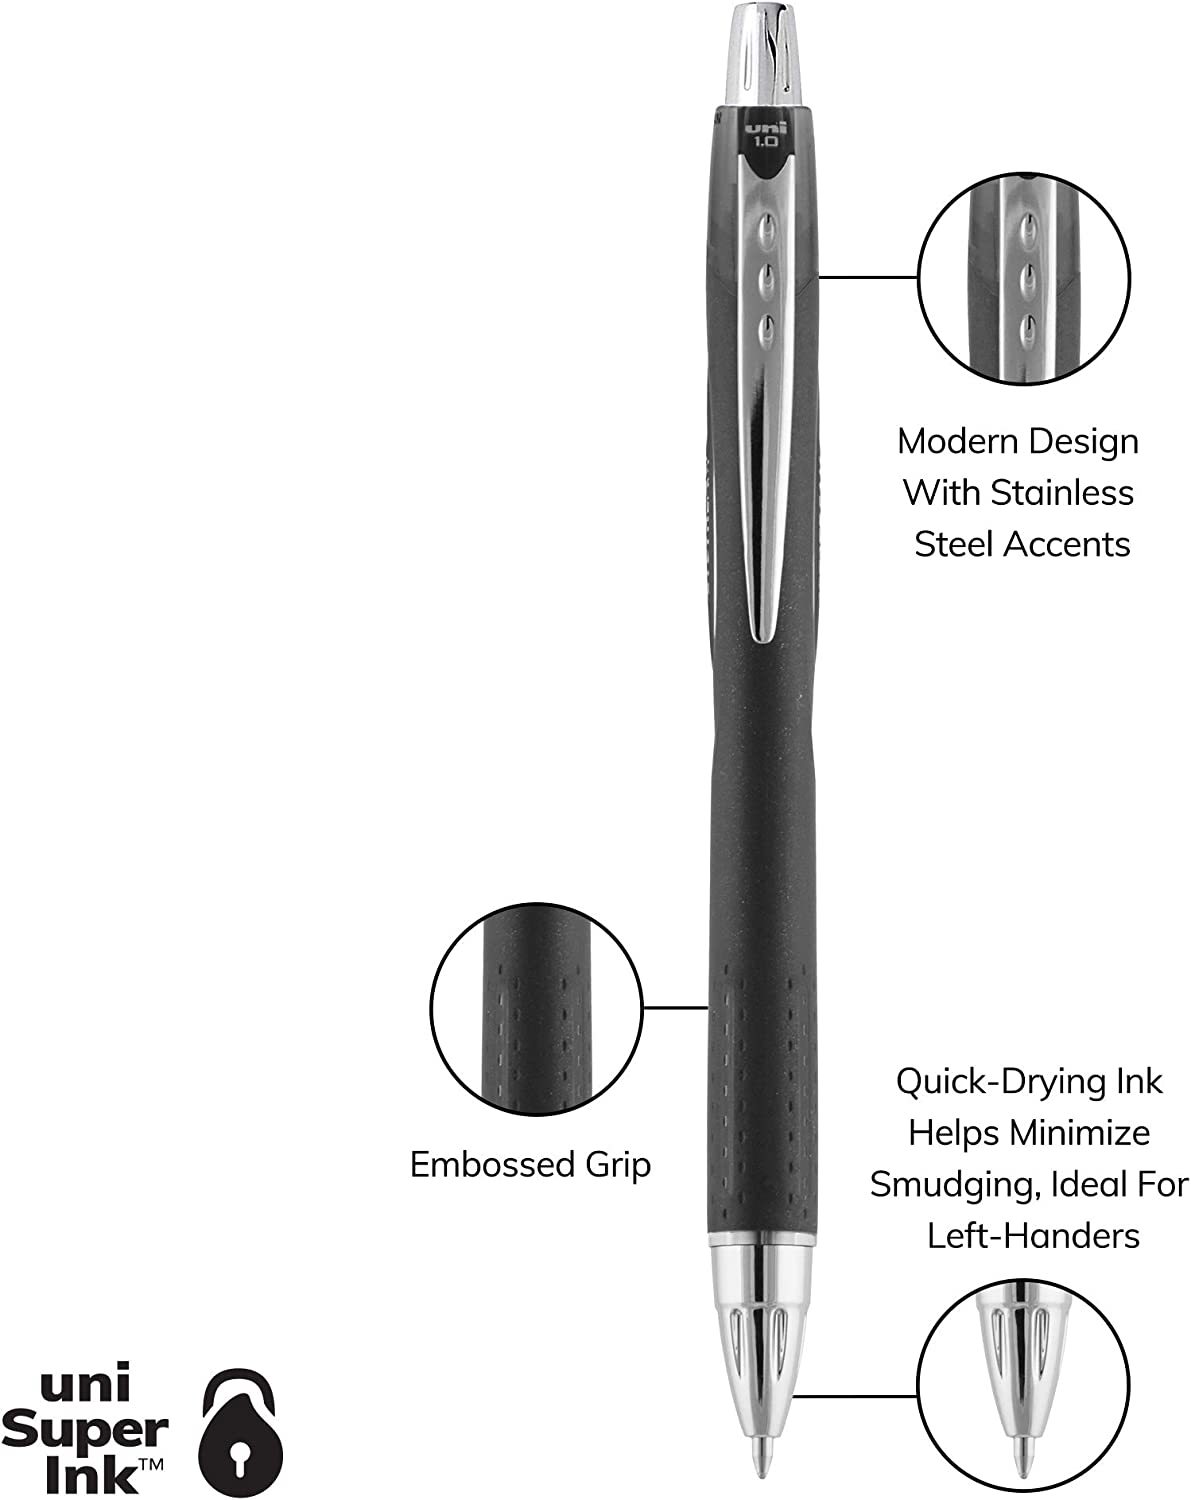 Uniball Jetstream 101 12 Pack, 1.0mm Medium Blue, Wirecutter Best Pen, Ballpoint Pens, Ballpoint Ink Pens | Office Supplies, Ballpoint Pen, Colored